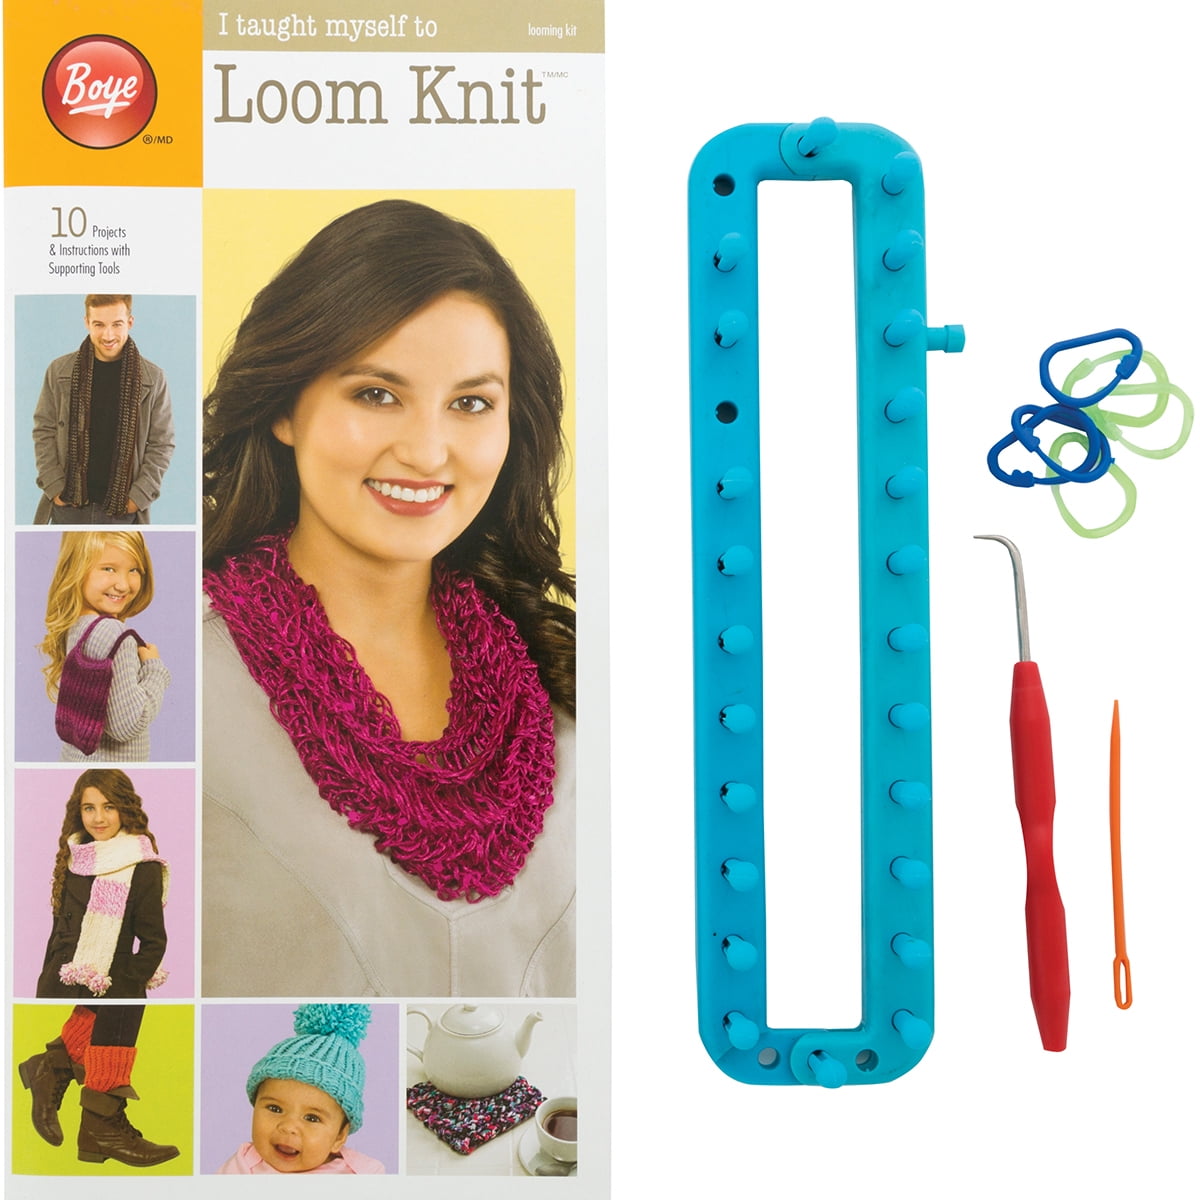 Crochet Kit for Beginners, 105pcs Crochet Starter Kit with 18 Colors Crochet Yarn, Double-Layer Crochet Set Beginner Crochet Kit for Kids/Adults